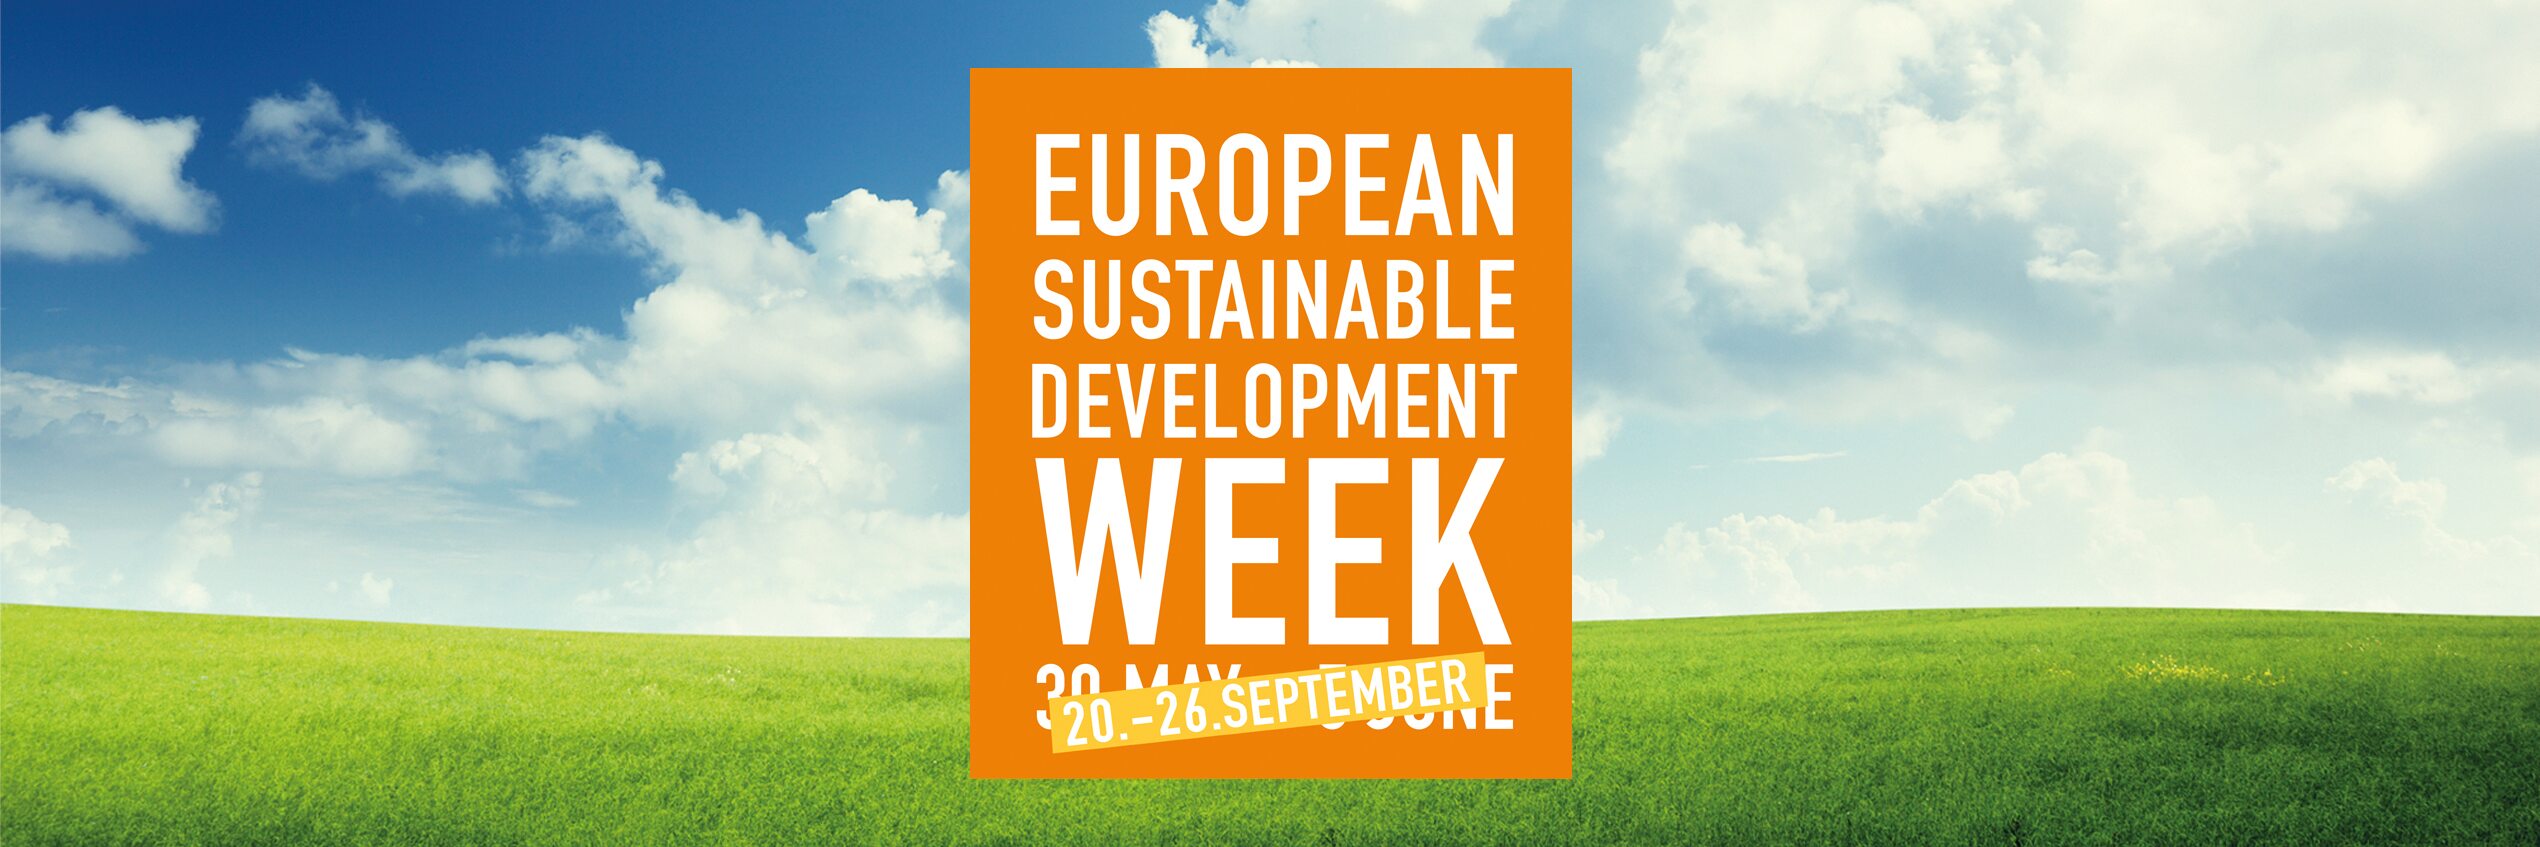 Diehl Metering deltager i Den europæiske uge for bæredygtig udvikling